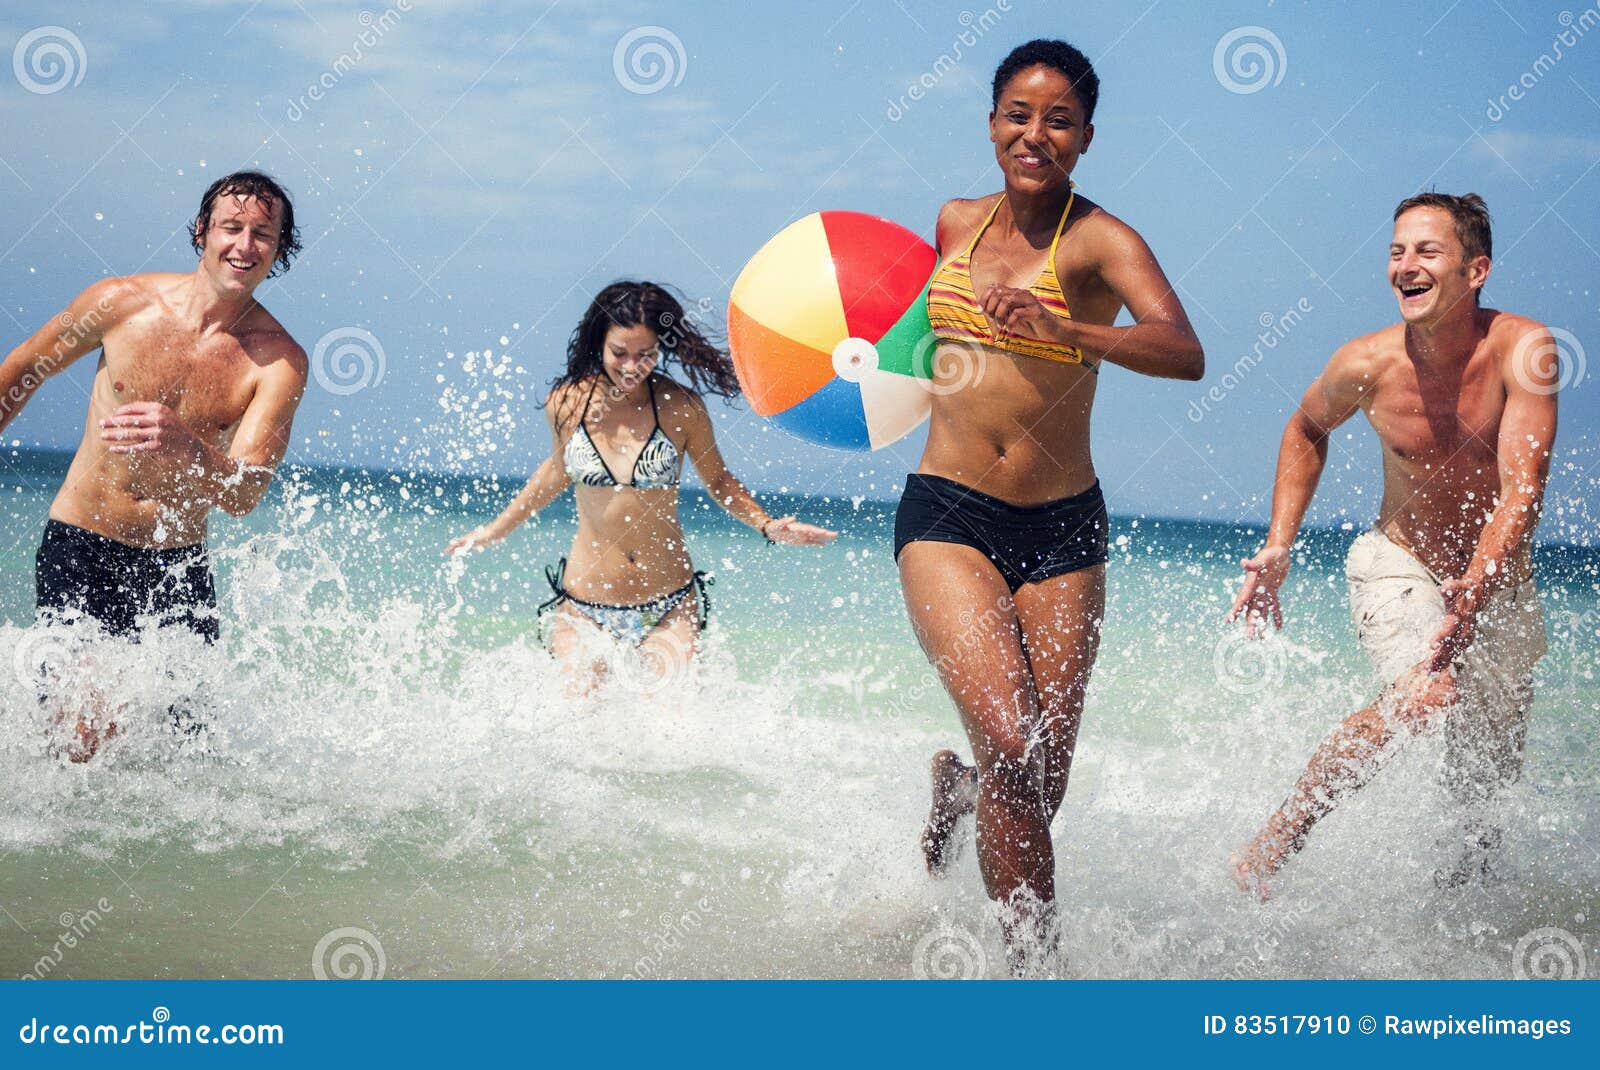 Foto De Stock Atividade De Relaxamento Na Praia, Pessoas Jogando Futebol., Royalty-Free